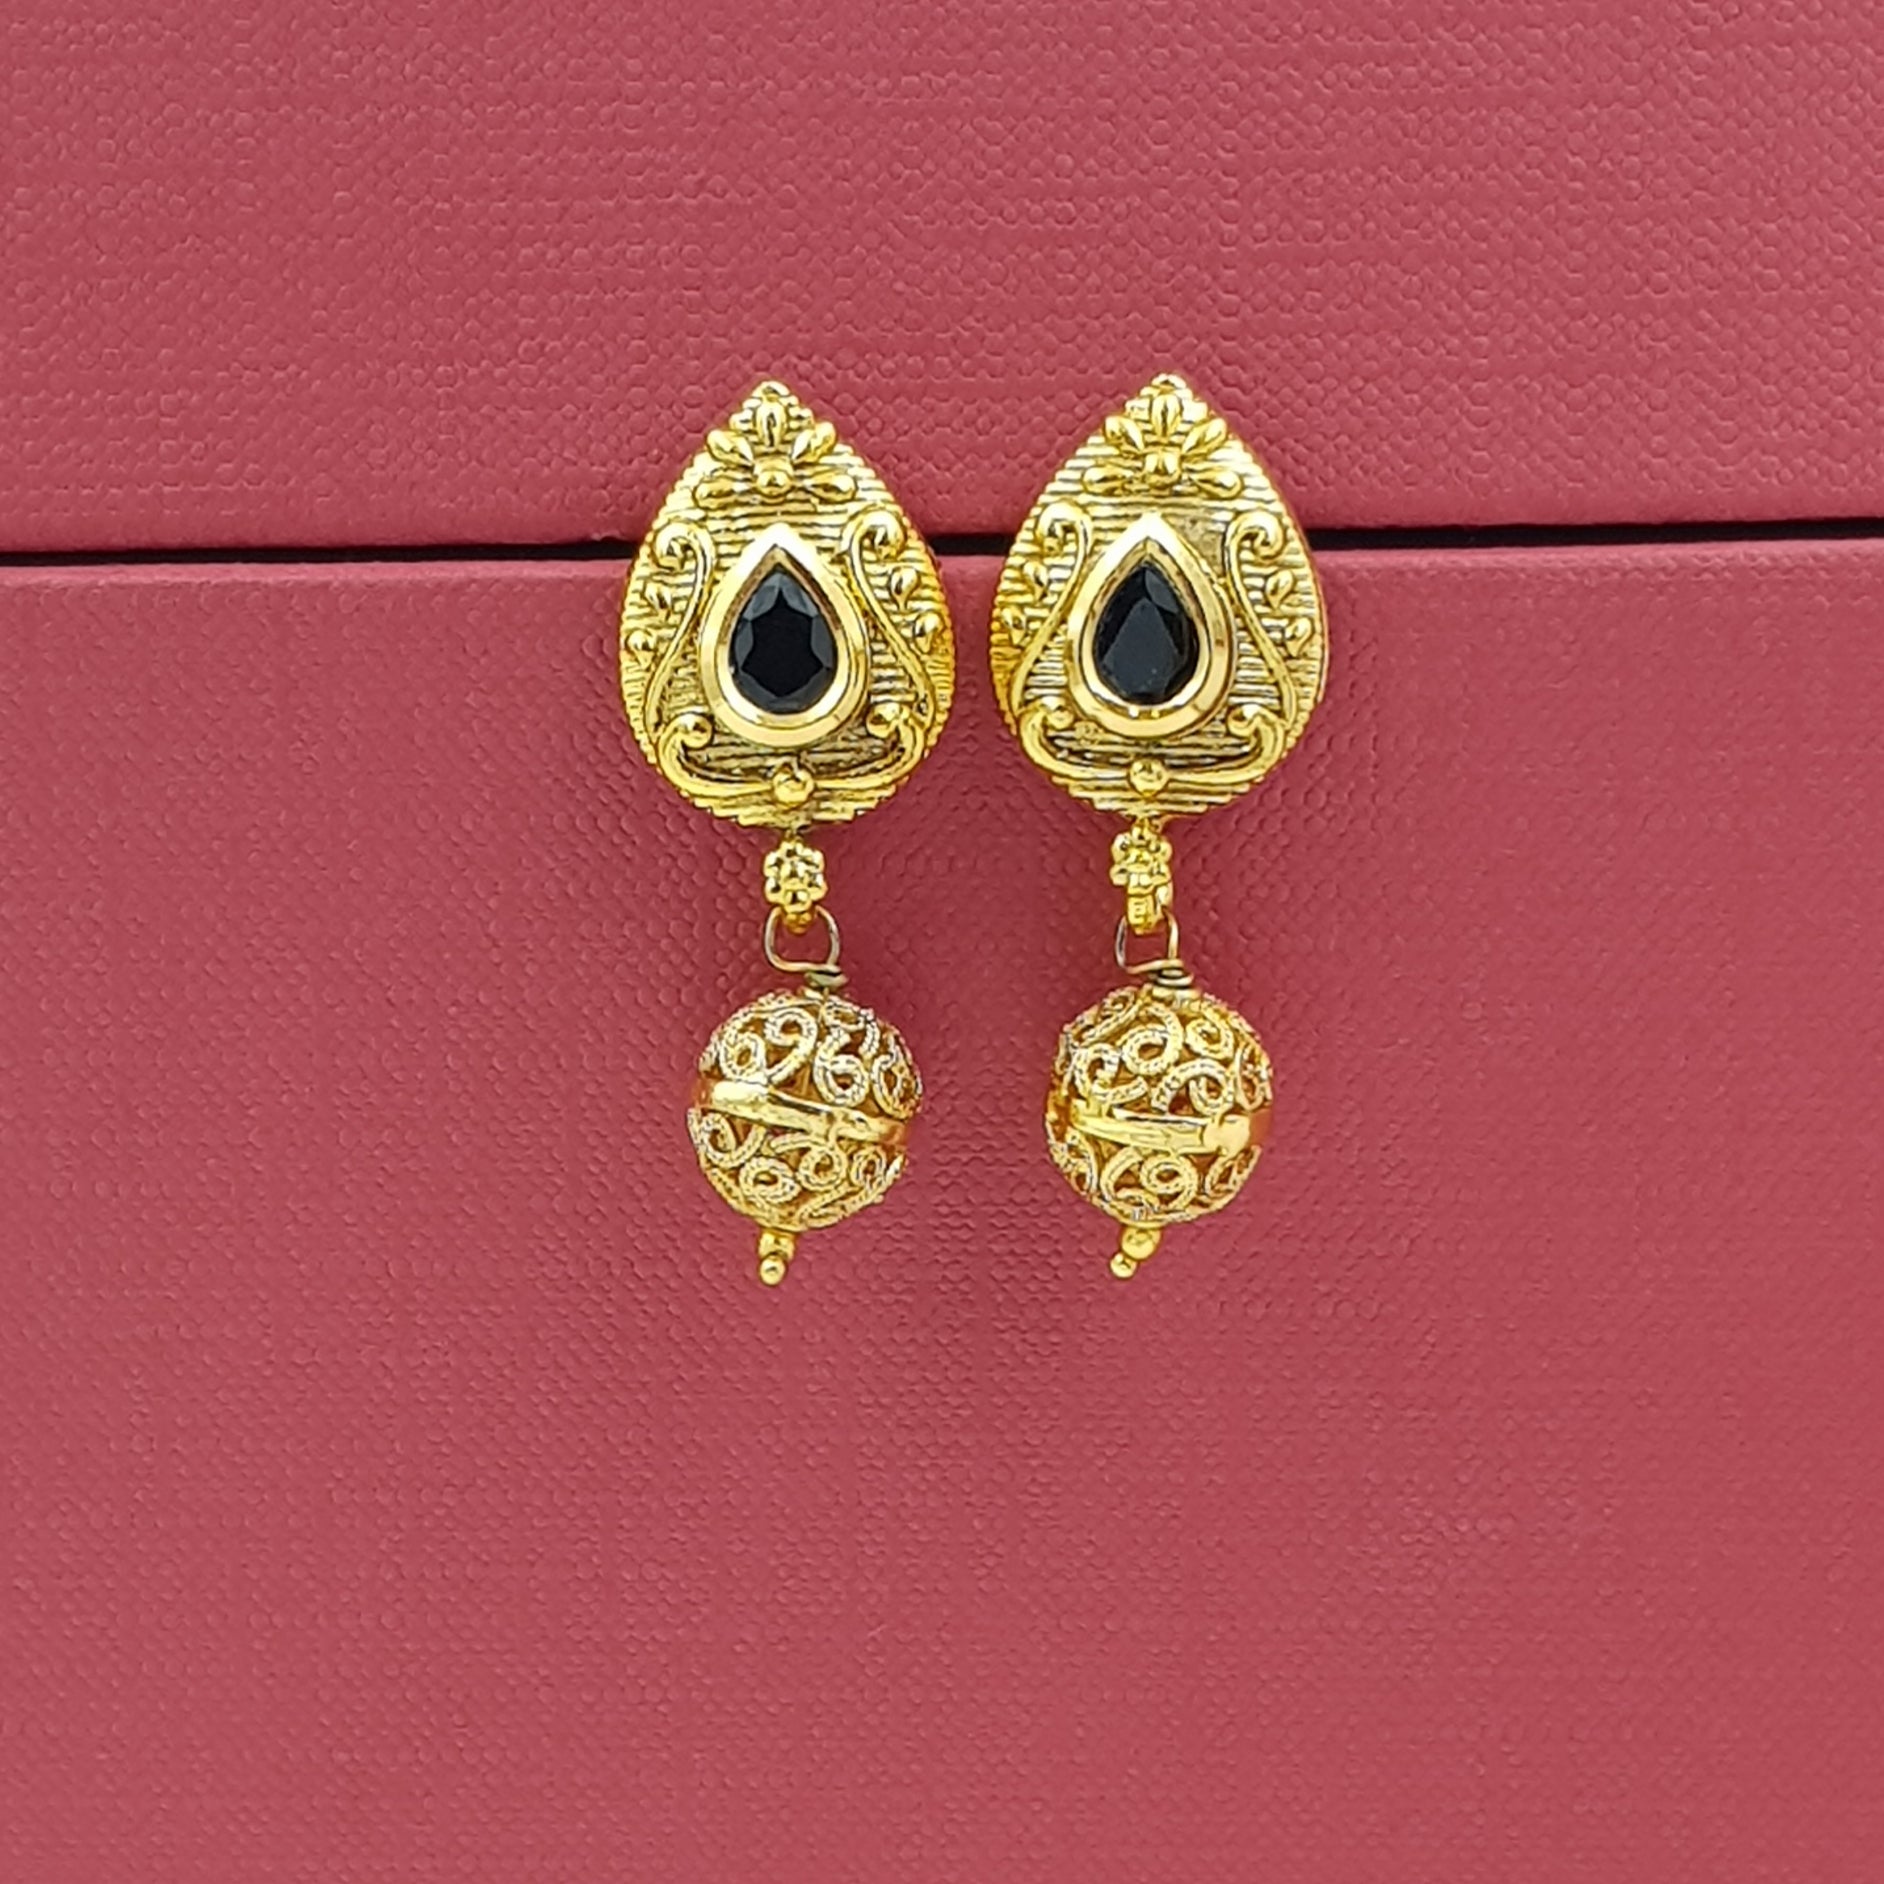 Light Earring Gold Look Earring 9104-100 - Dazzles Jewellery